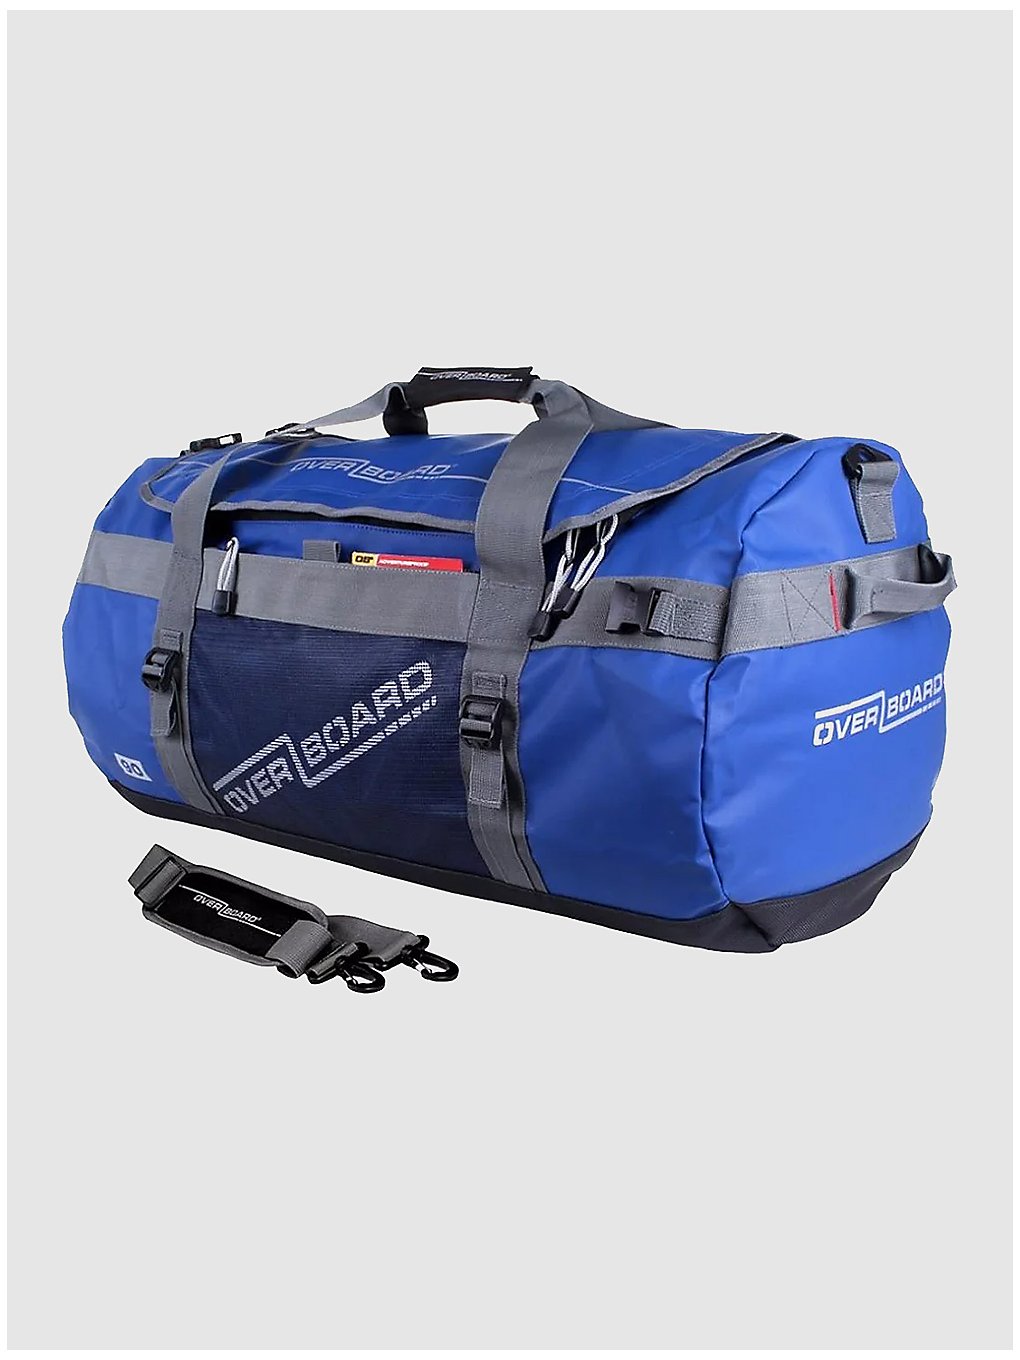 Overboard Waterproof Duffel Tasche 90L Adv blue kaufen